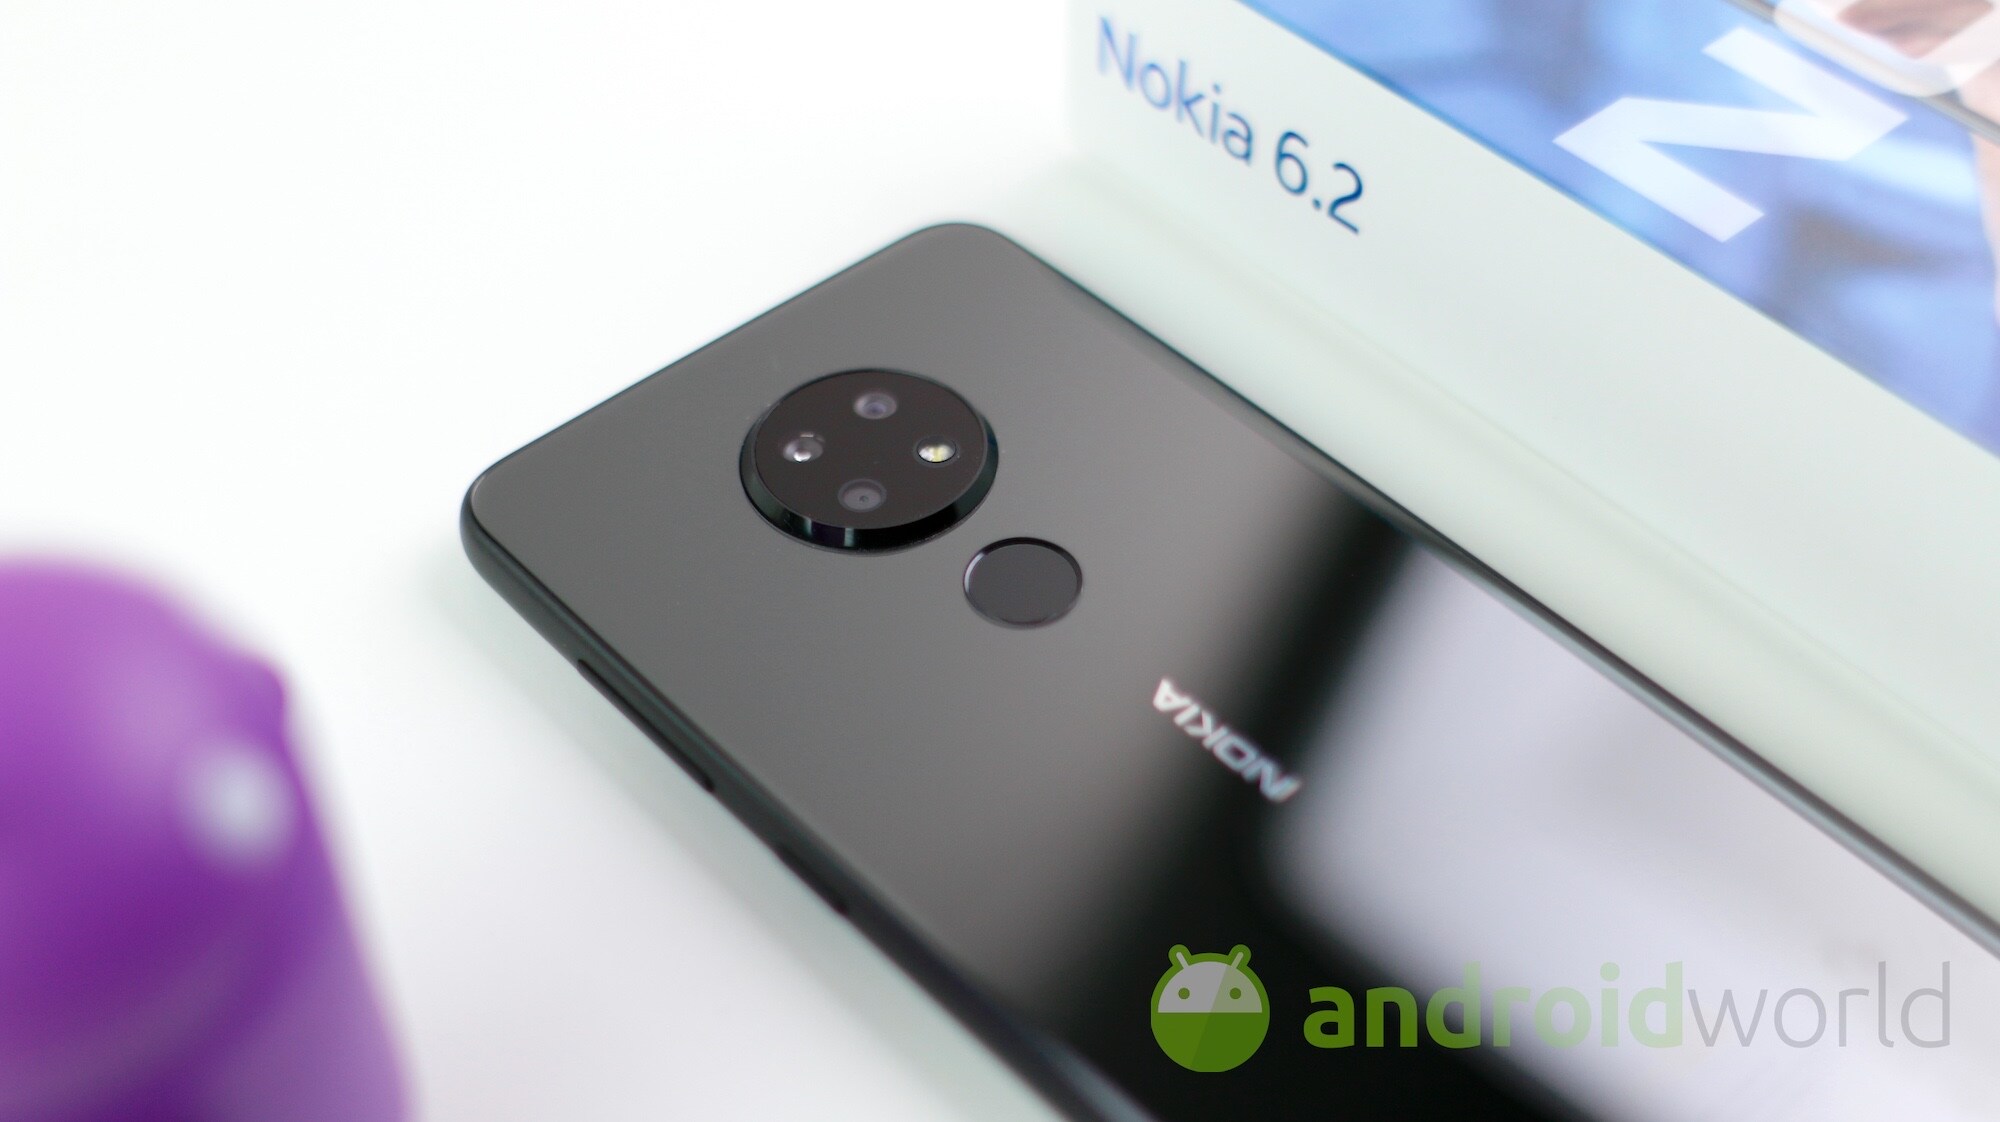 Android 10 arriva per Nokia 6.2 e Black Shark 2: parte la distribuzione ufficiale (aggiornato)